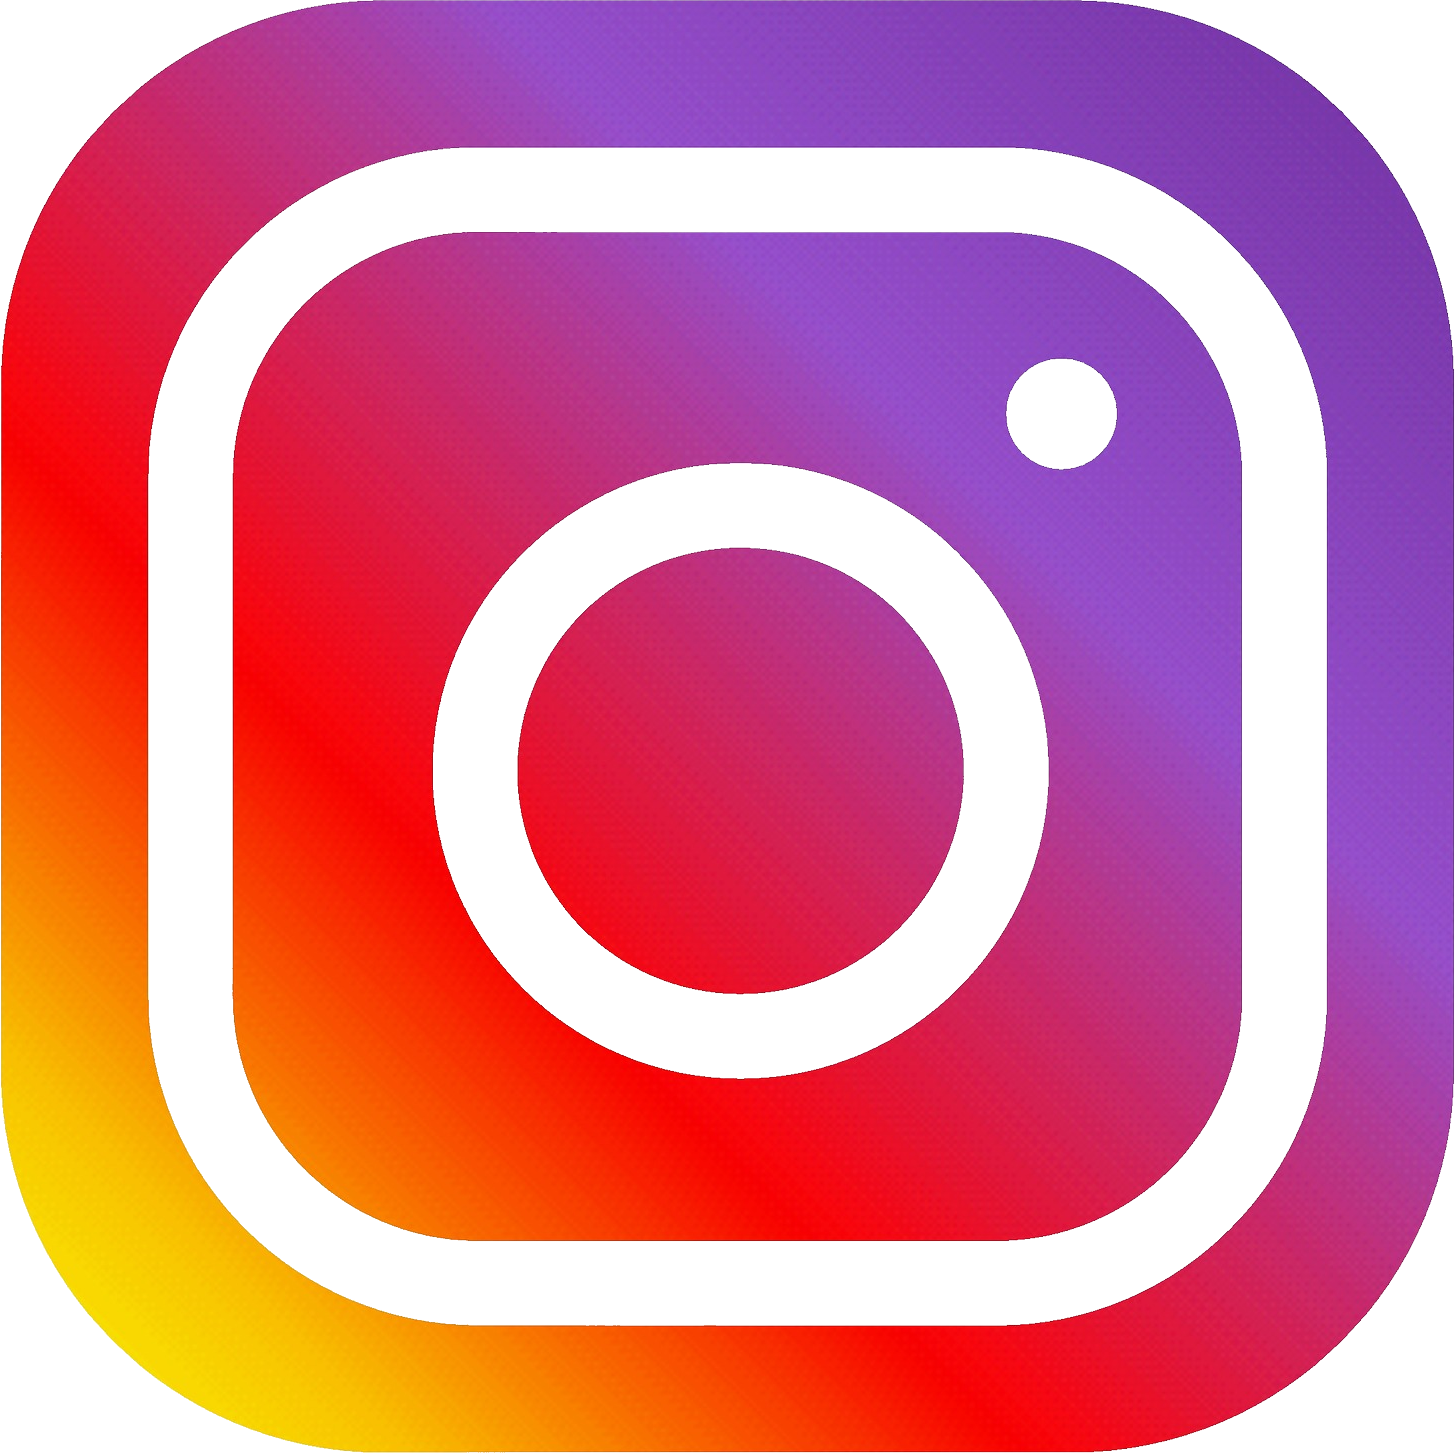 Logo Instagram PNG Transparent